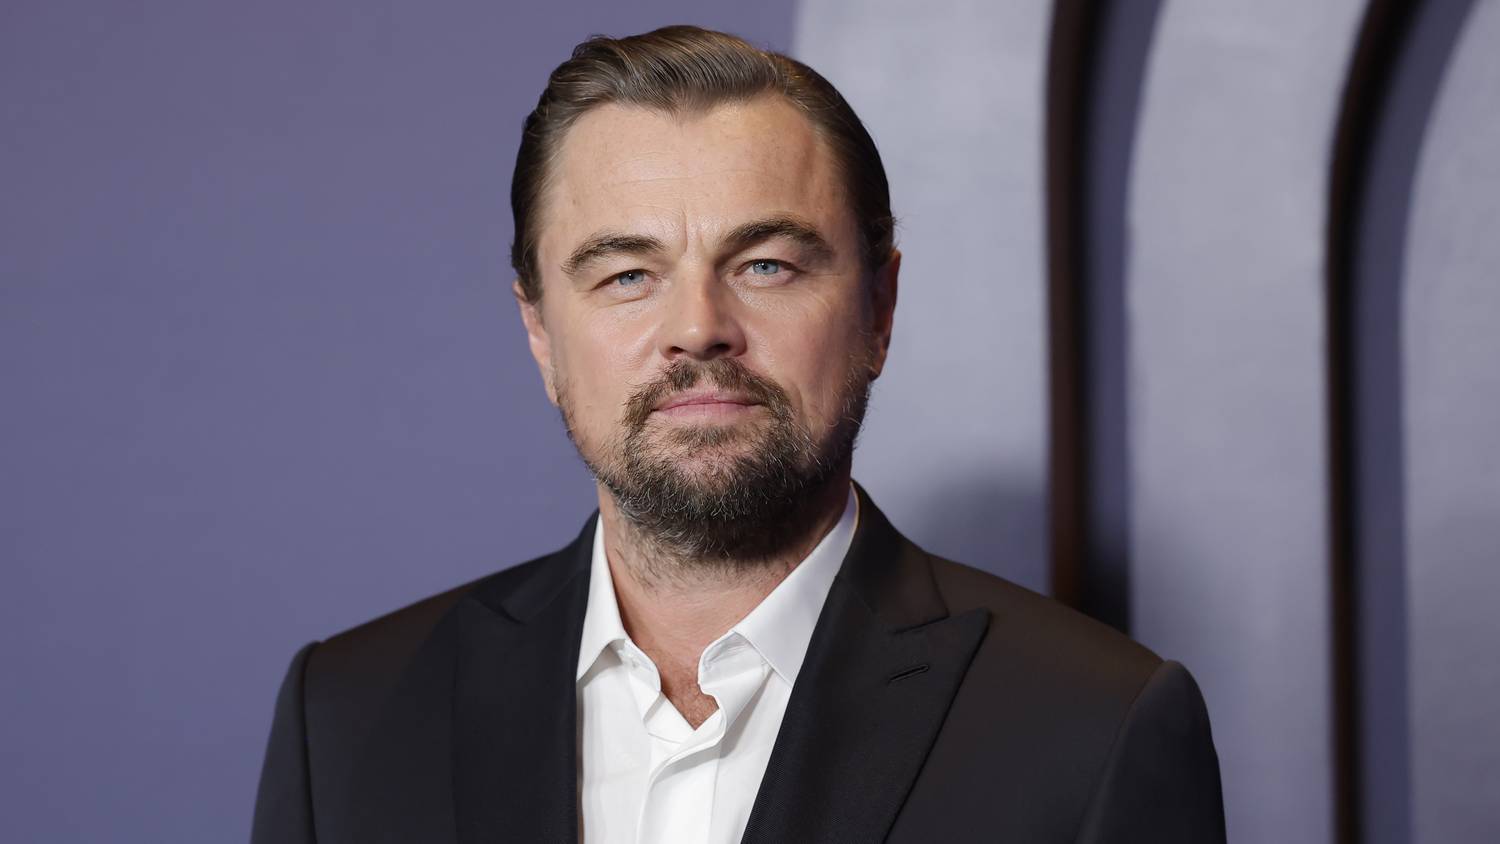 Leonardo DiCaprio 23 évvel fiatalabb szerelme szó szerint Éva kosztümben tűnt fel